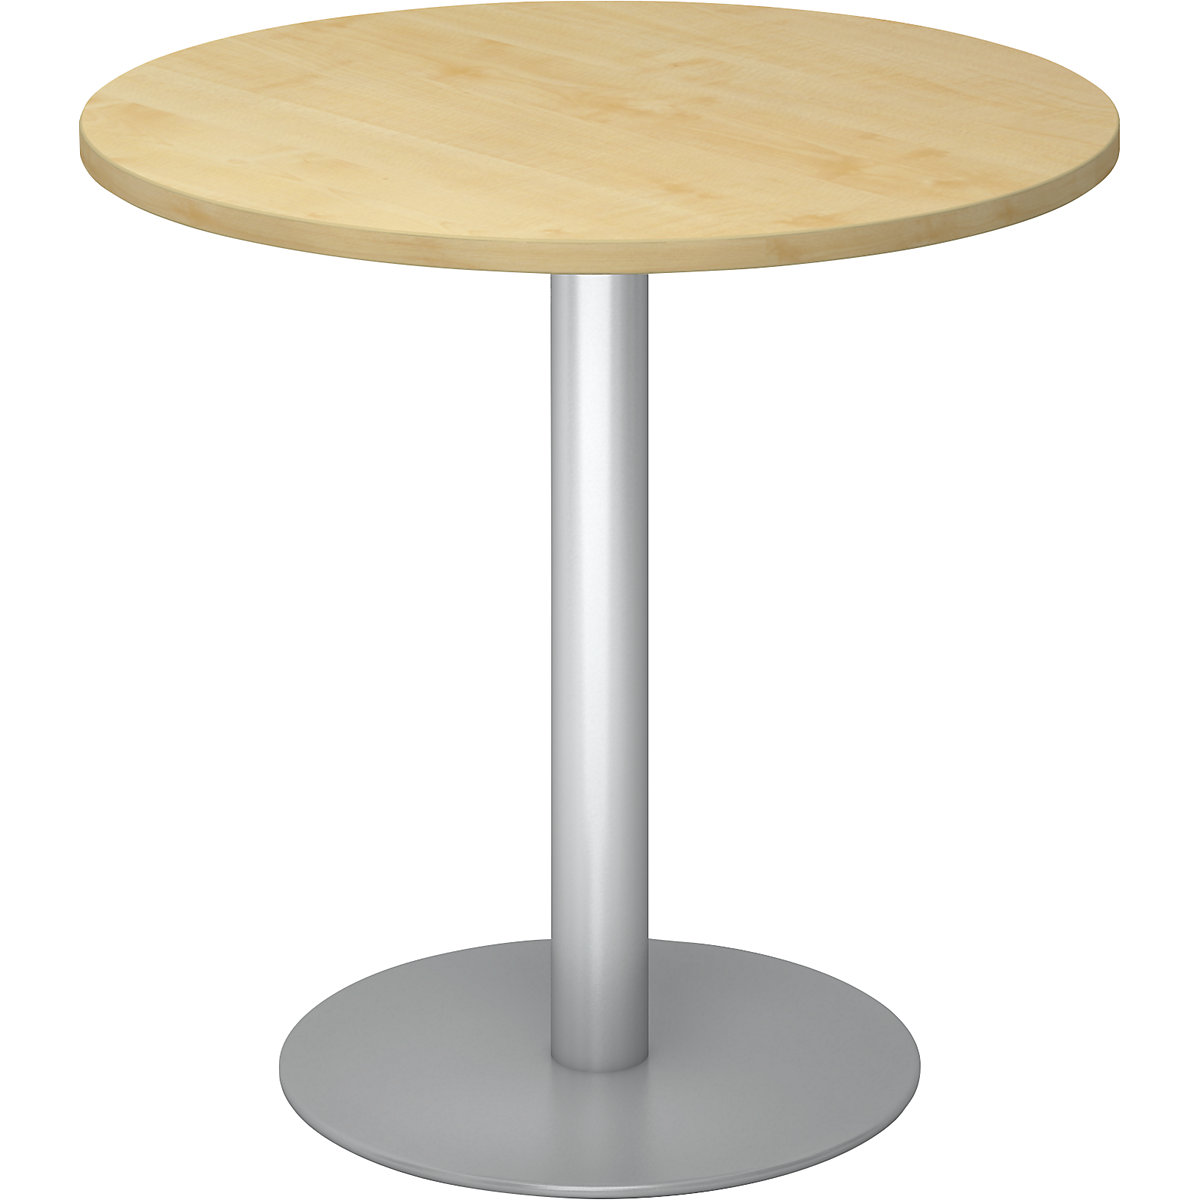 Tárgyalóasztal, Ø 800 mm, 755 mm magas, ezüst váz, juhar-dekor asztallap